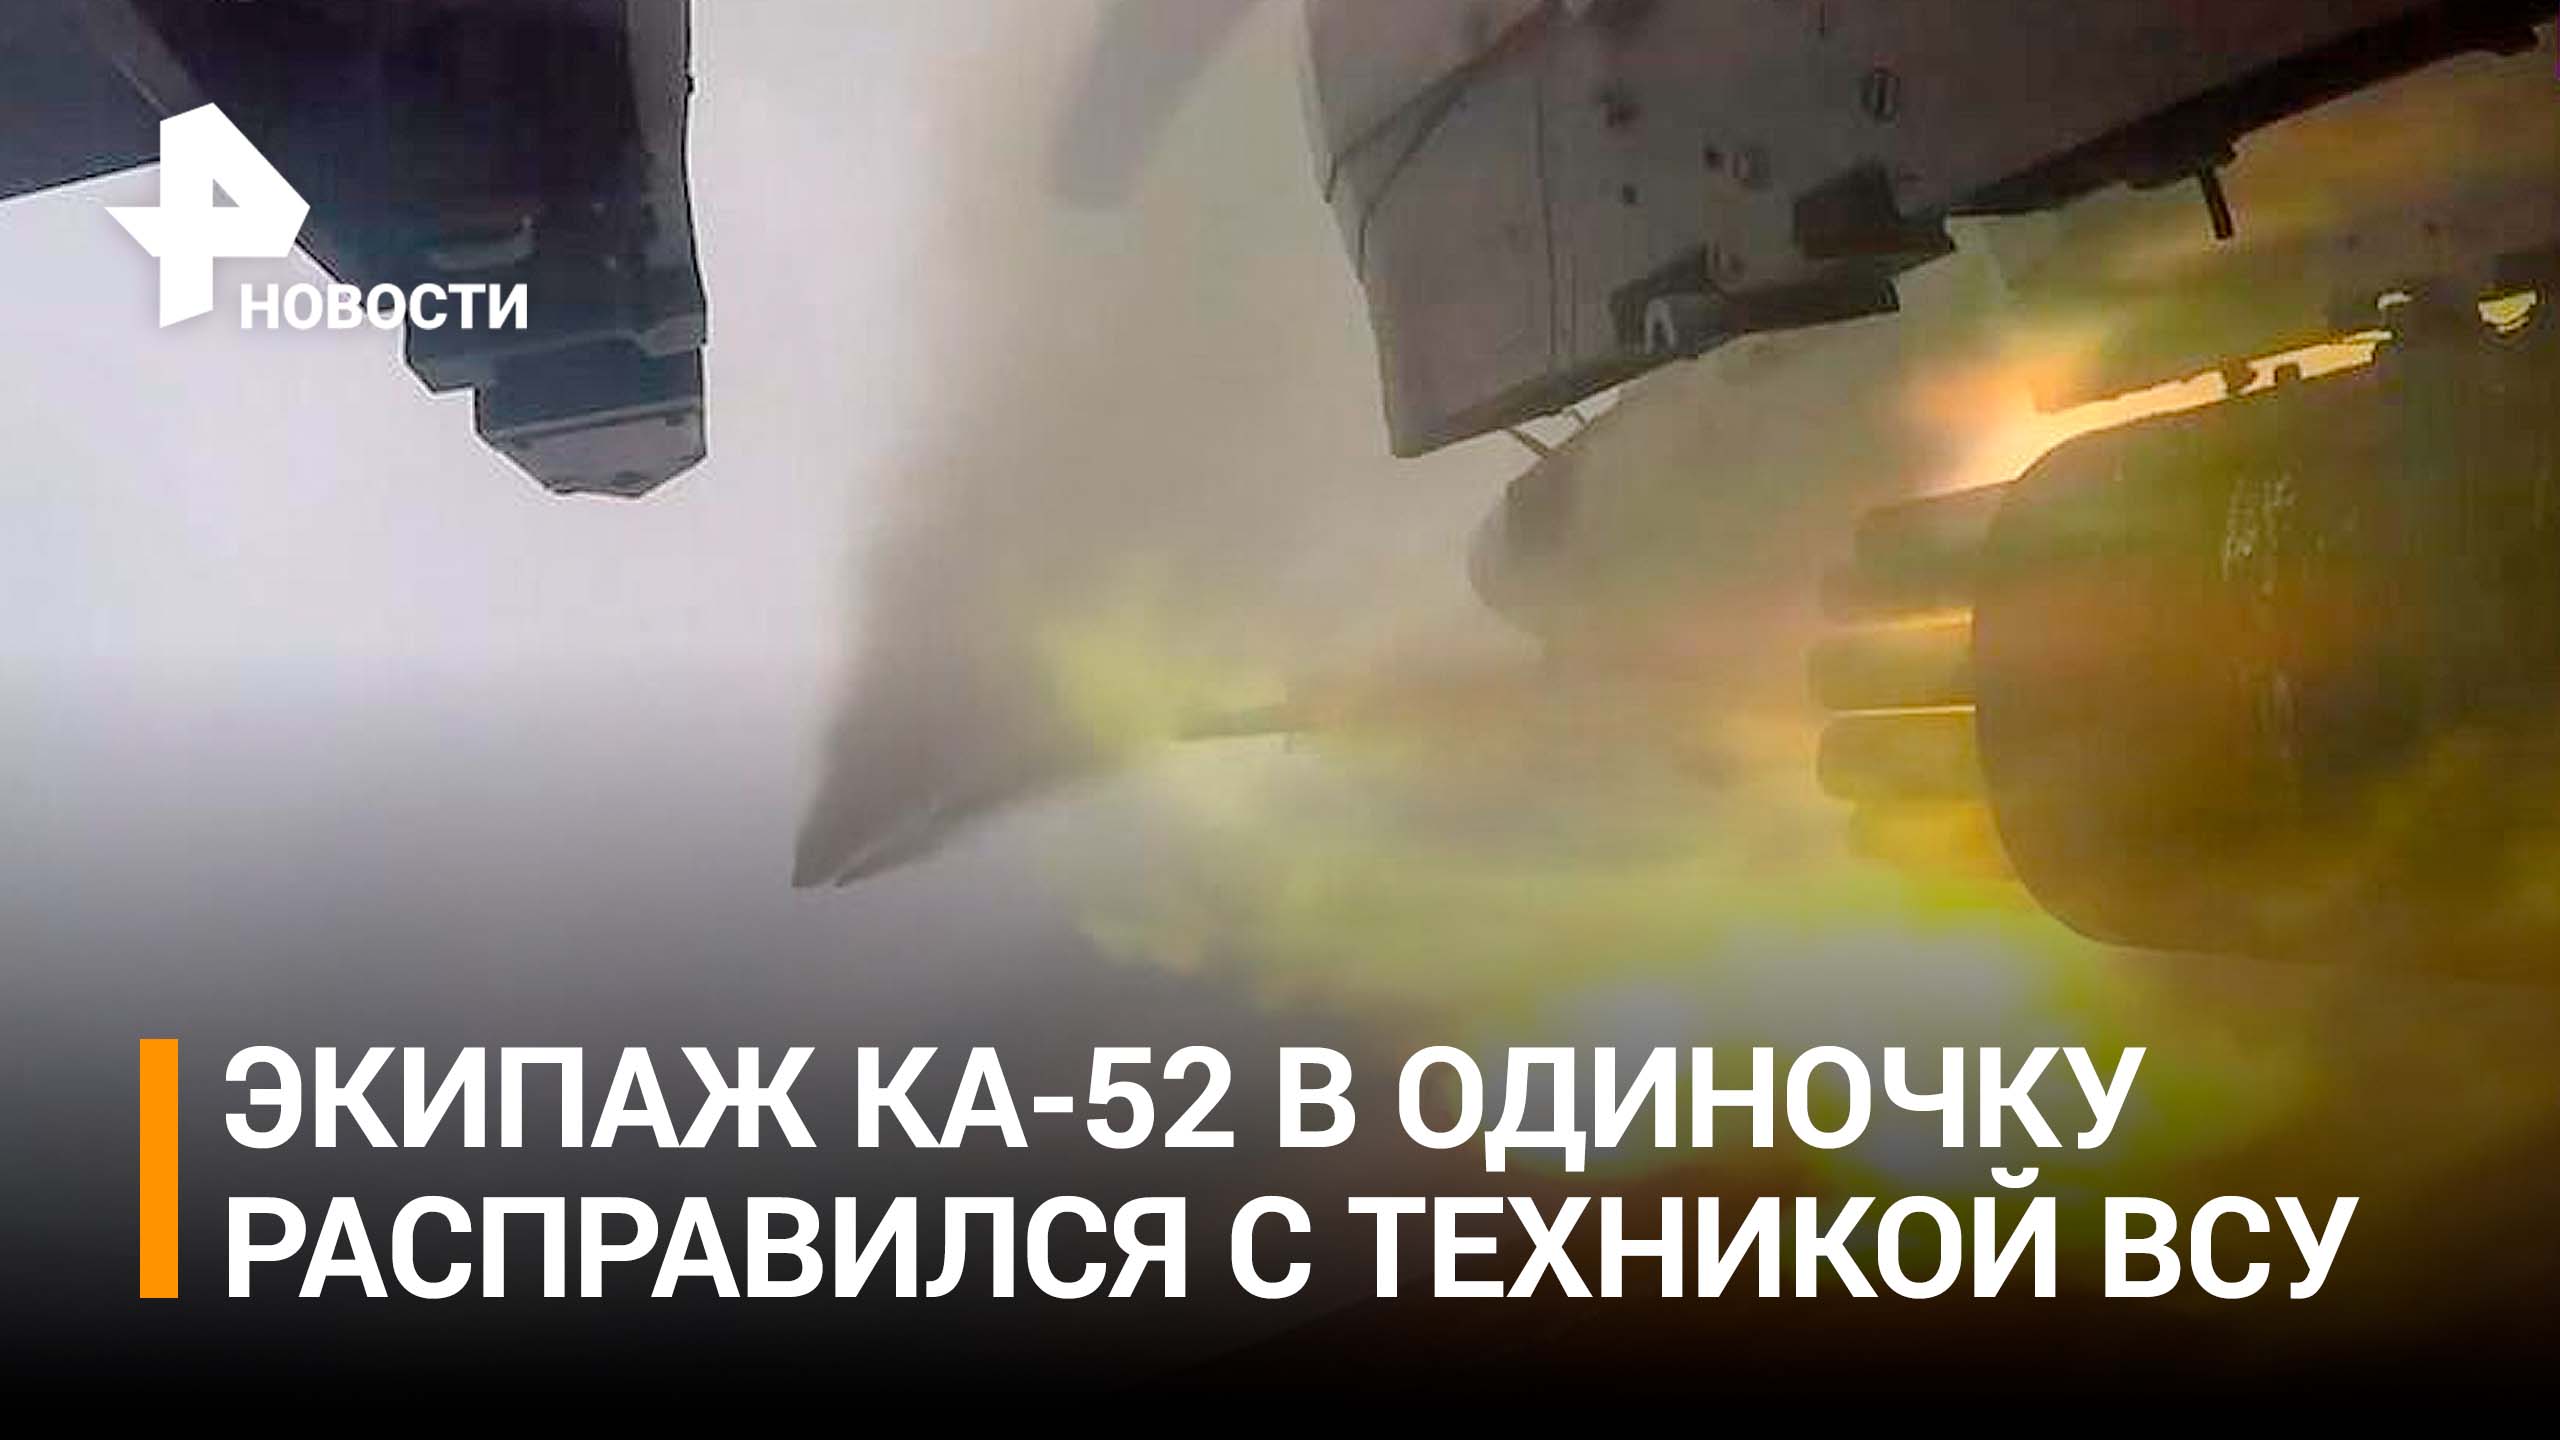 Экипаж вертолета Ка-52 в одиночку расправился с техникой и пехотой ВСУ / РЕН Новости